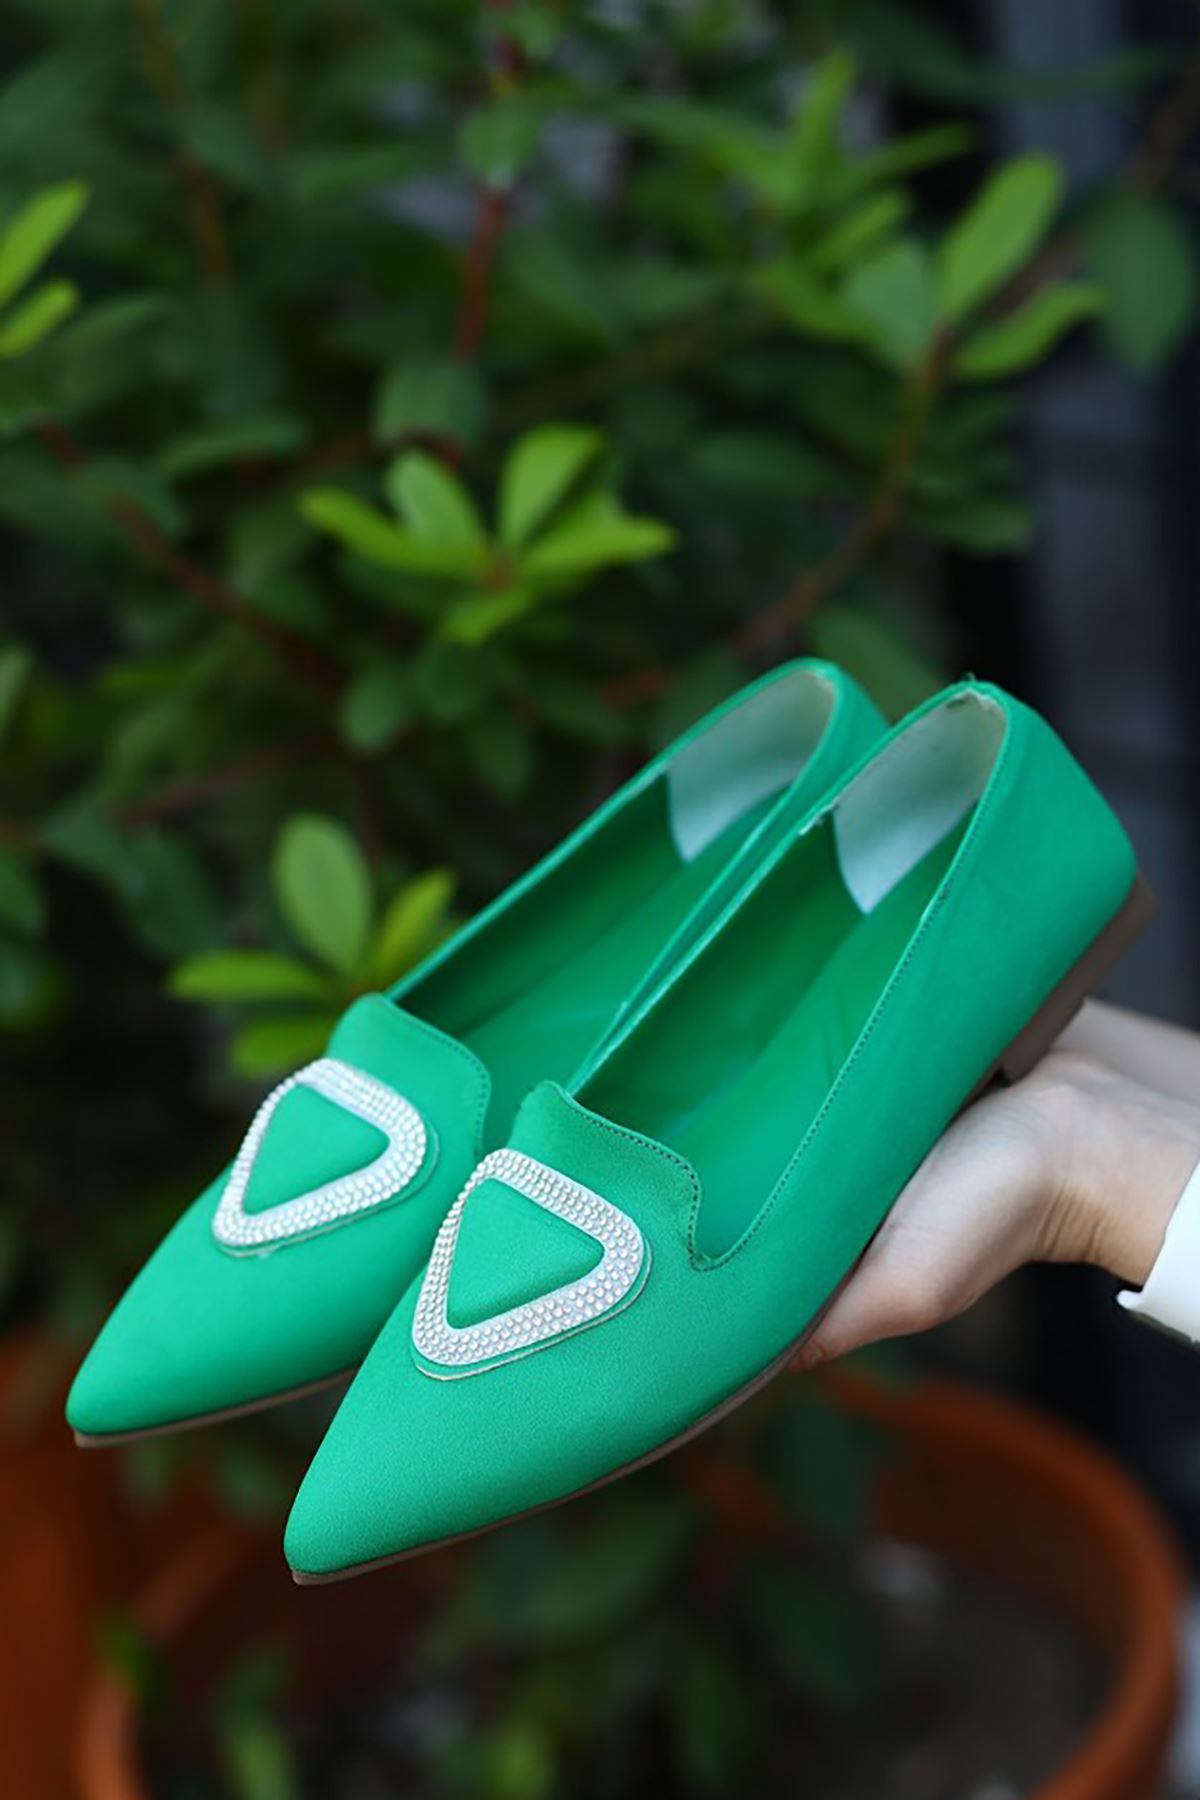 Mida Shoes ERBGilba Yeşil Saten Kadın Babet